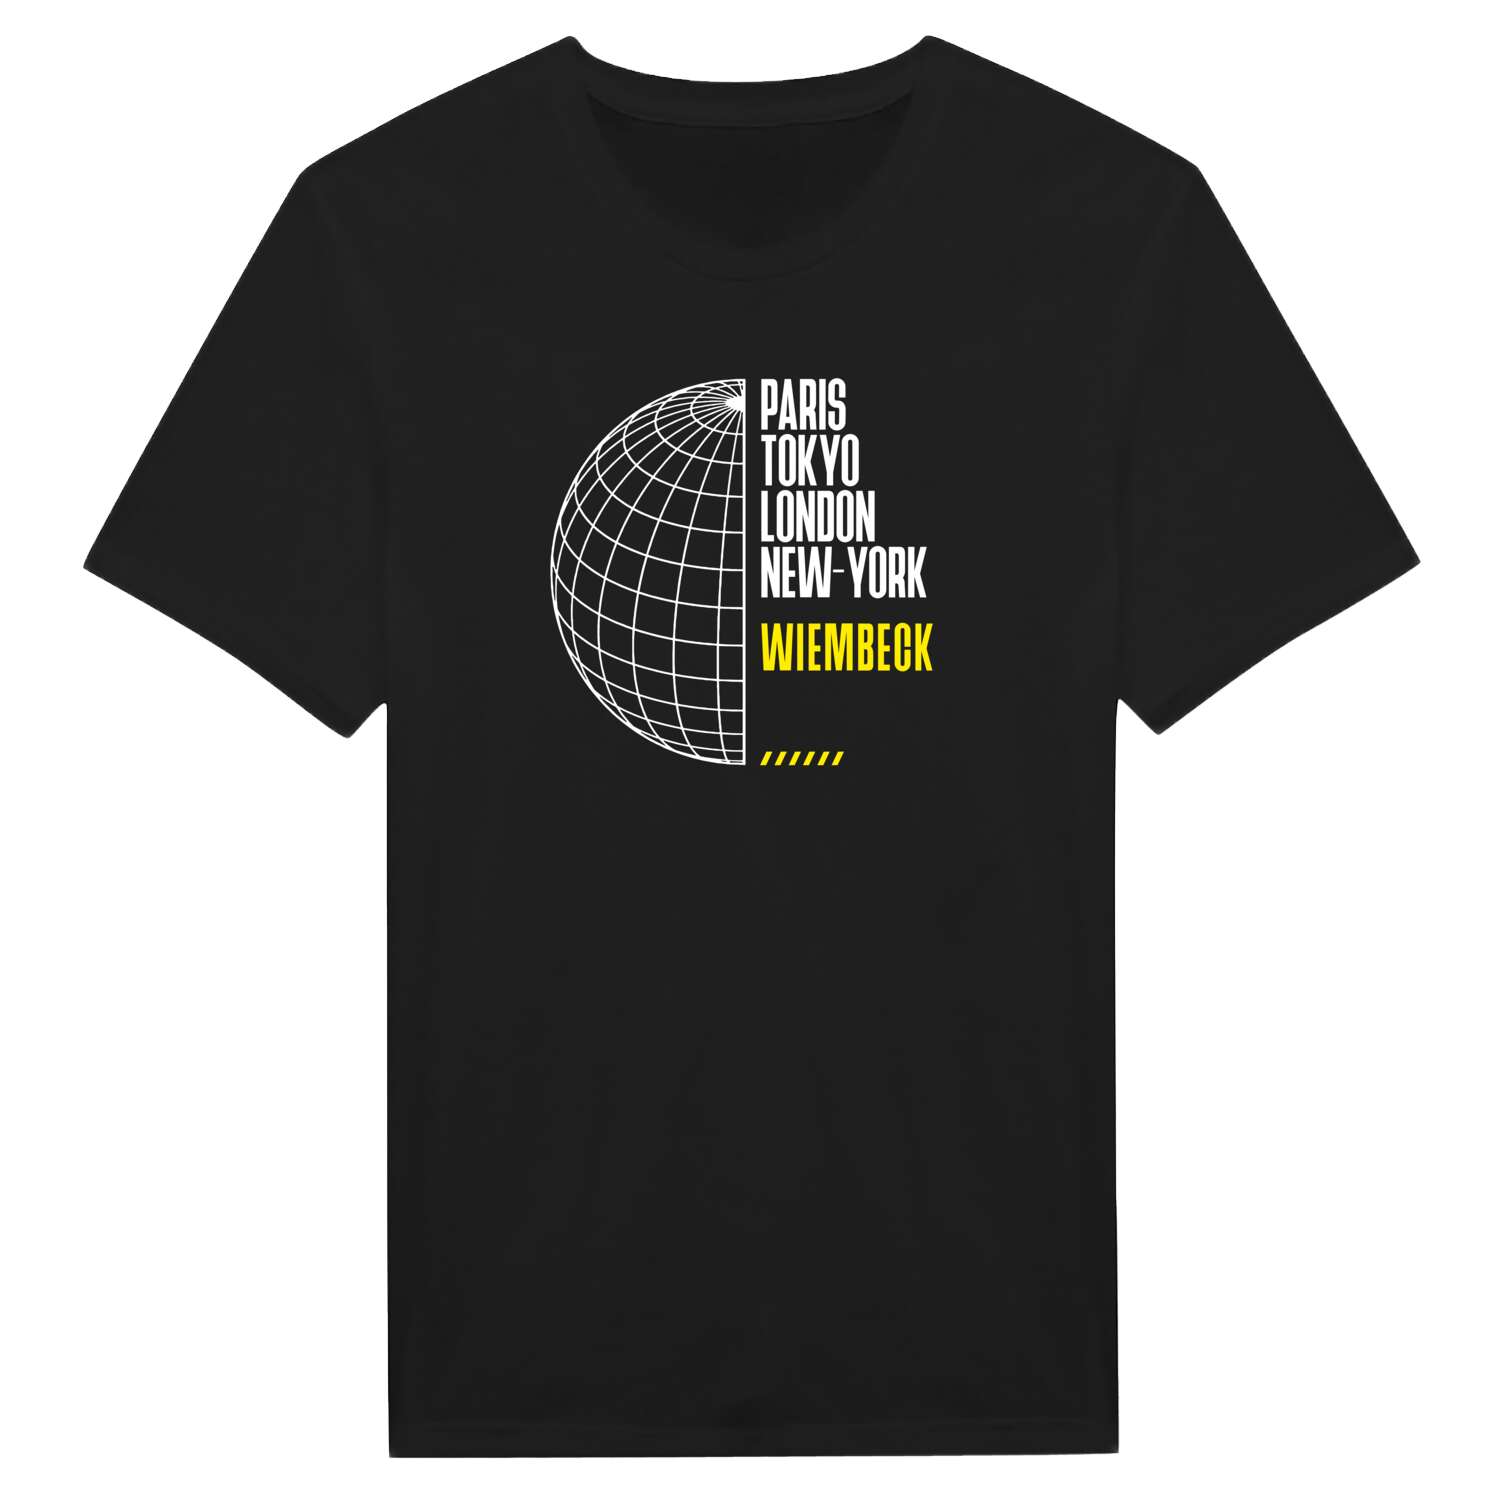 Wiembeck T-Shirt »Paris Tokyo London«